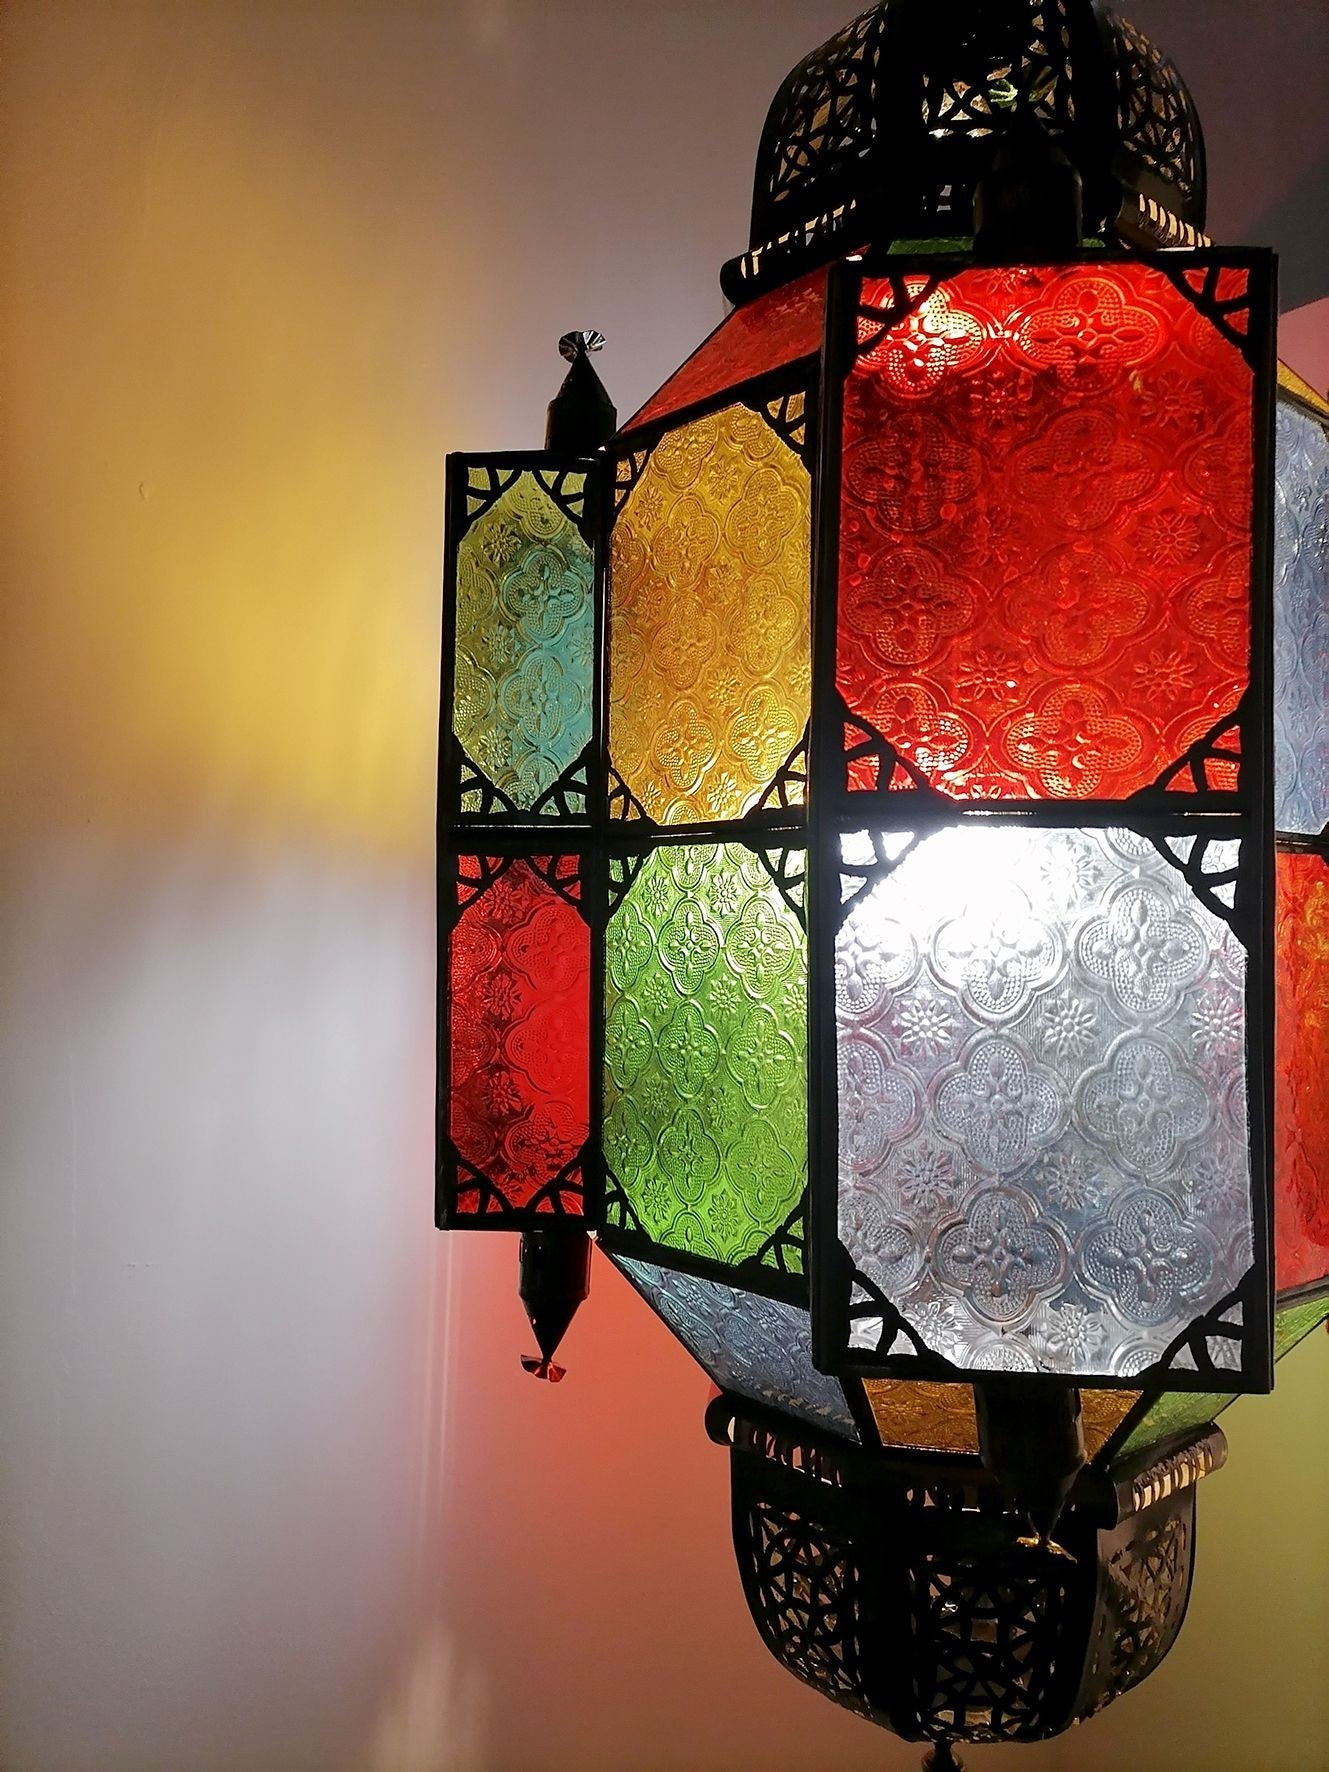 Immagini Stock - Lampada Turca O Lanterna Marocchina, Stile Orientale,  Lampade Decorative In Negozio, Nel Global Village, Dubai, Emirati Arabi  Uniti. Image 136307790